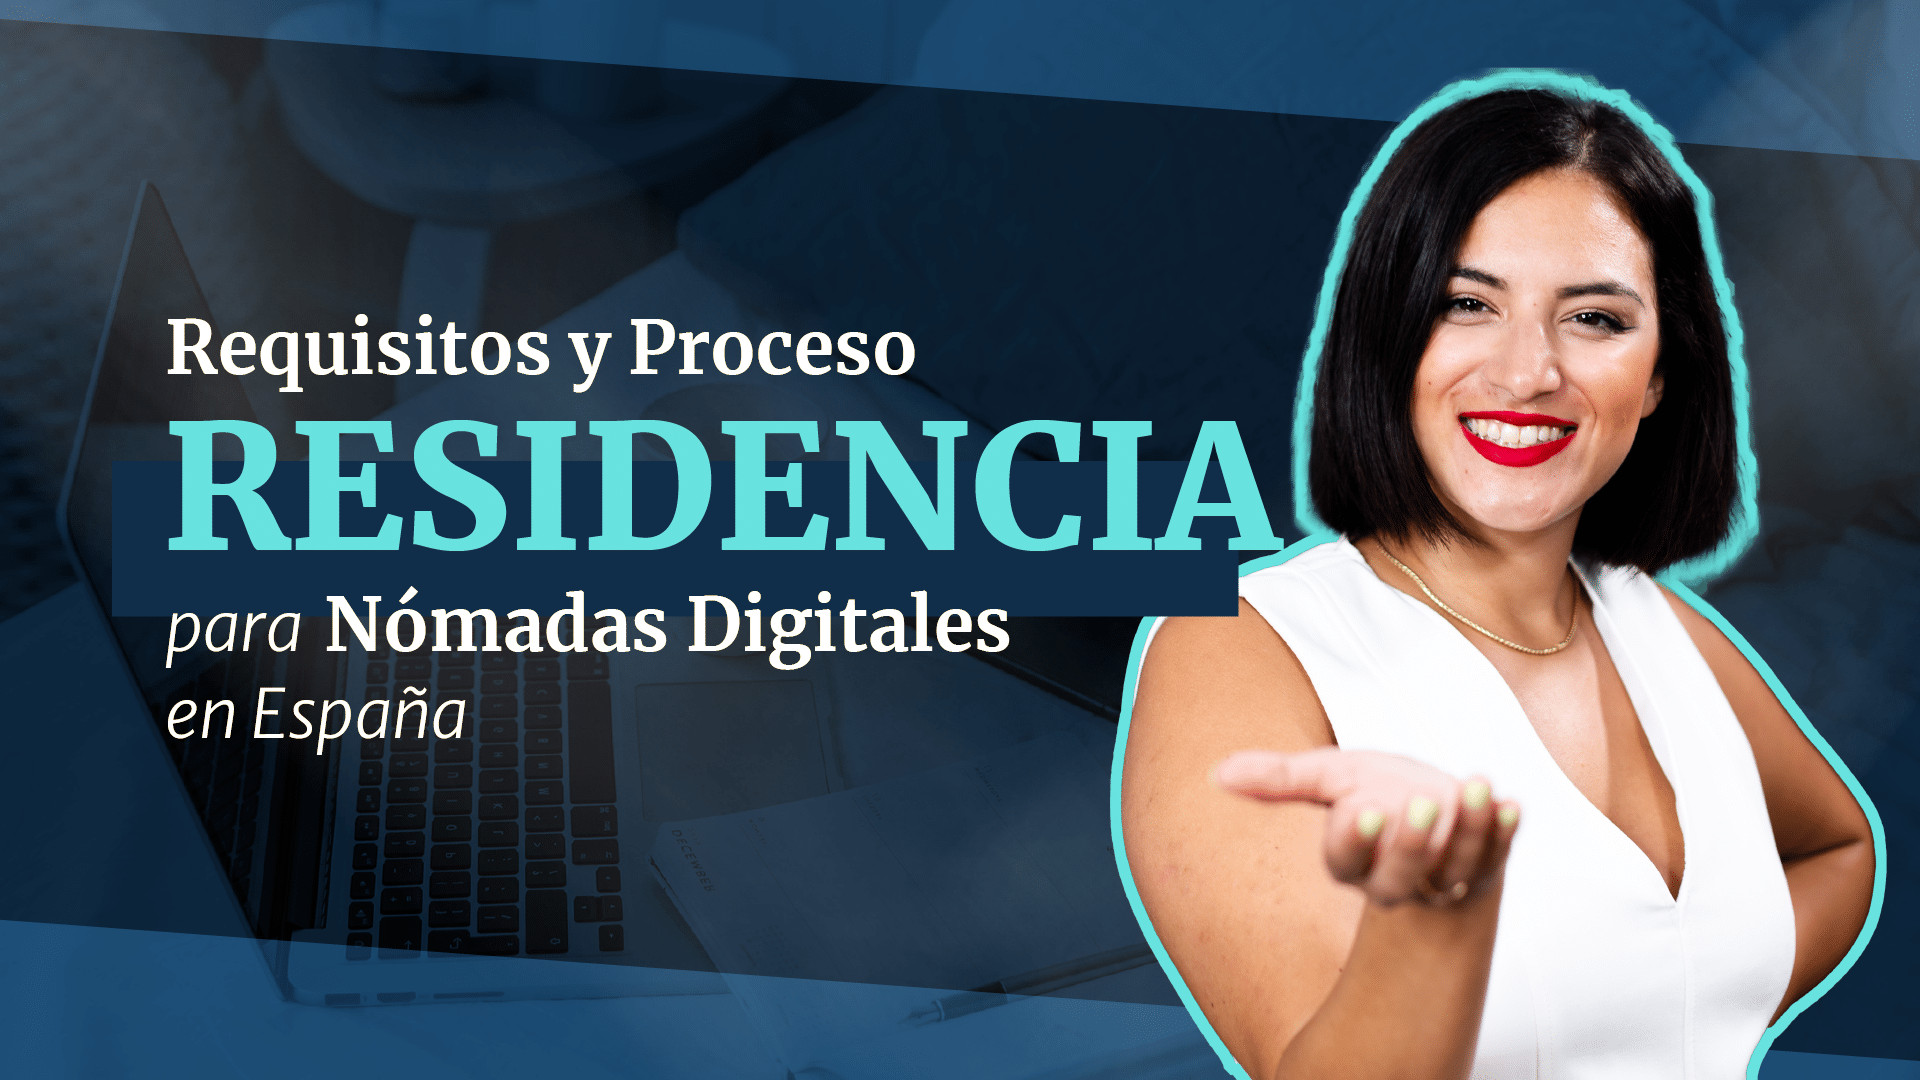 Residencia para Nómadas Digitales en España: Requisitos y Proceso